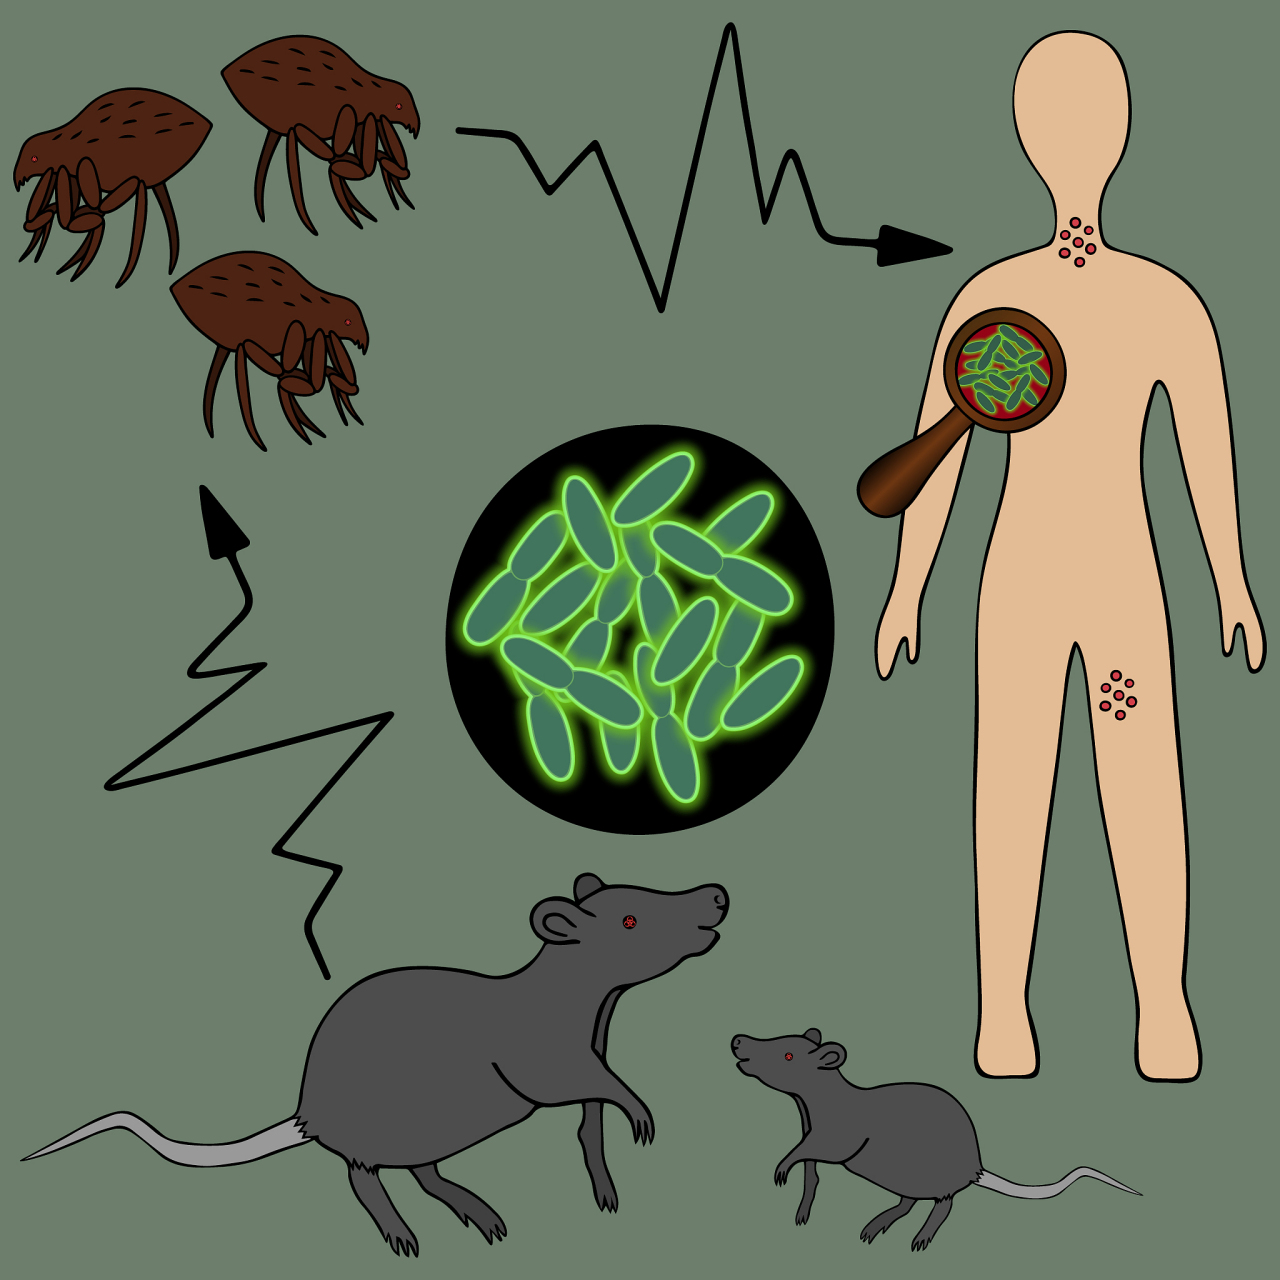 蜱虫,跳蚤等媒介传播的疾病,这些昆虫或节肢动物在吸取动物或人的血液